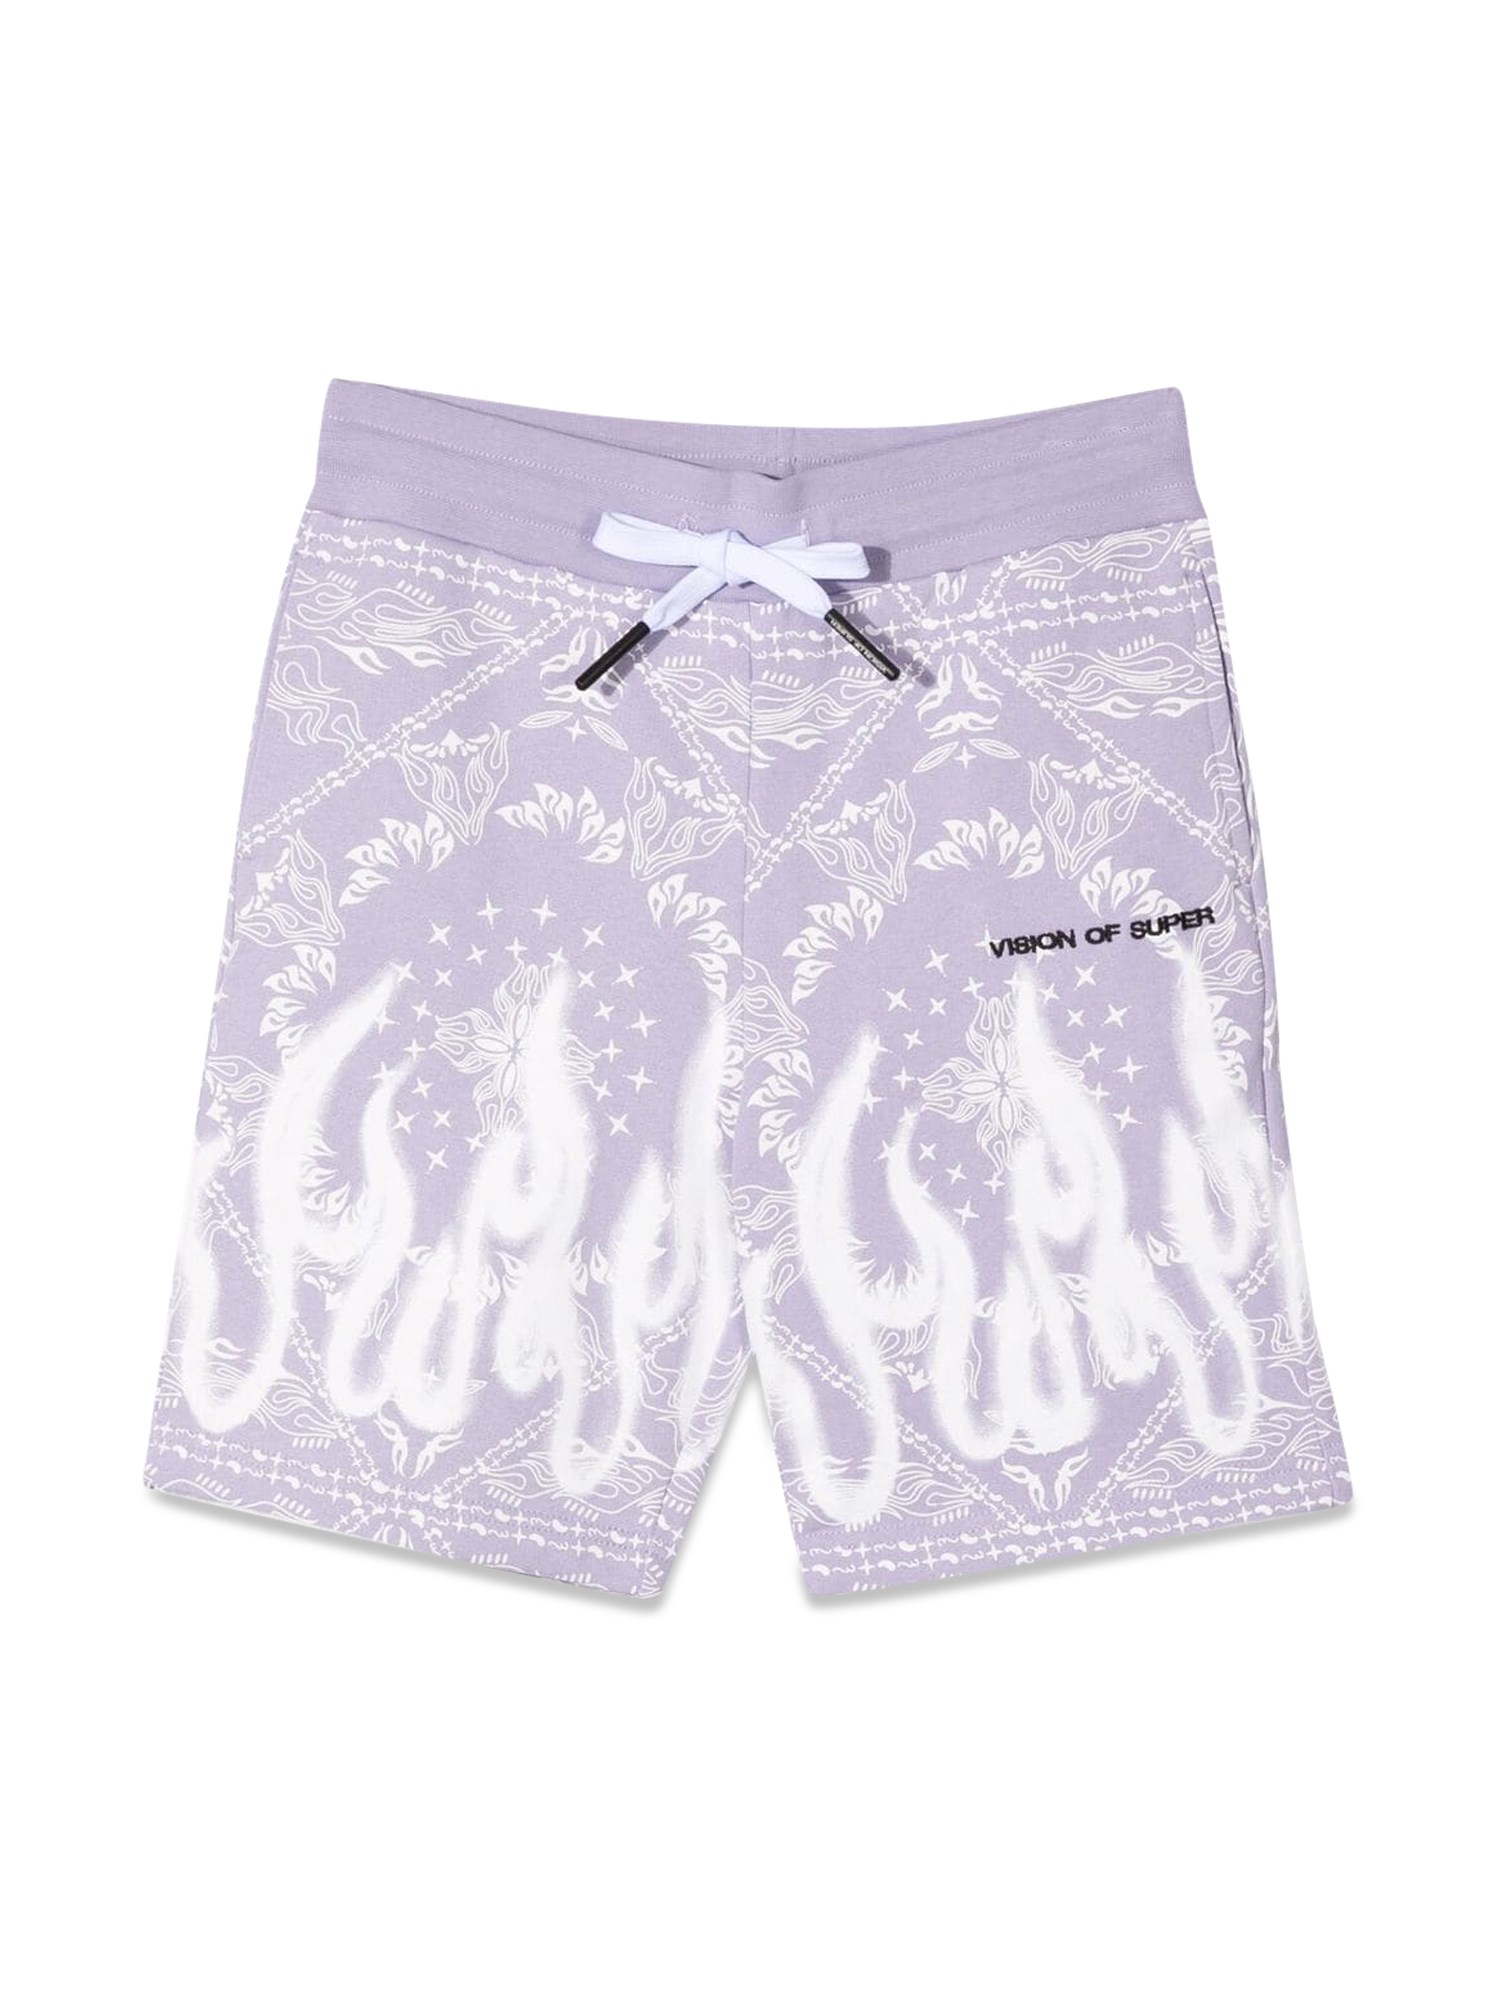 vision of super lilac shorts kids with bandana print